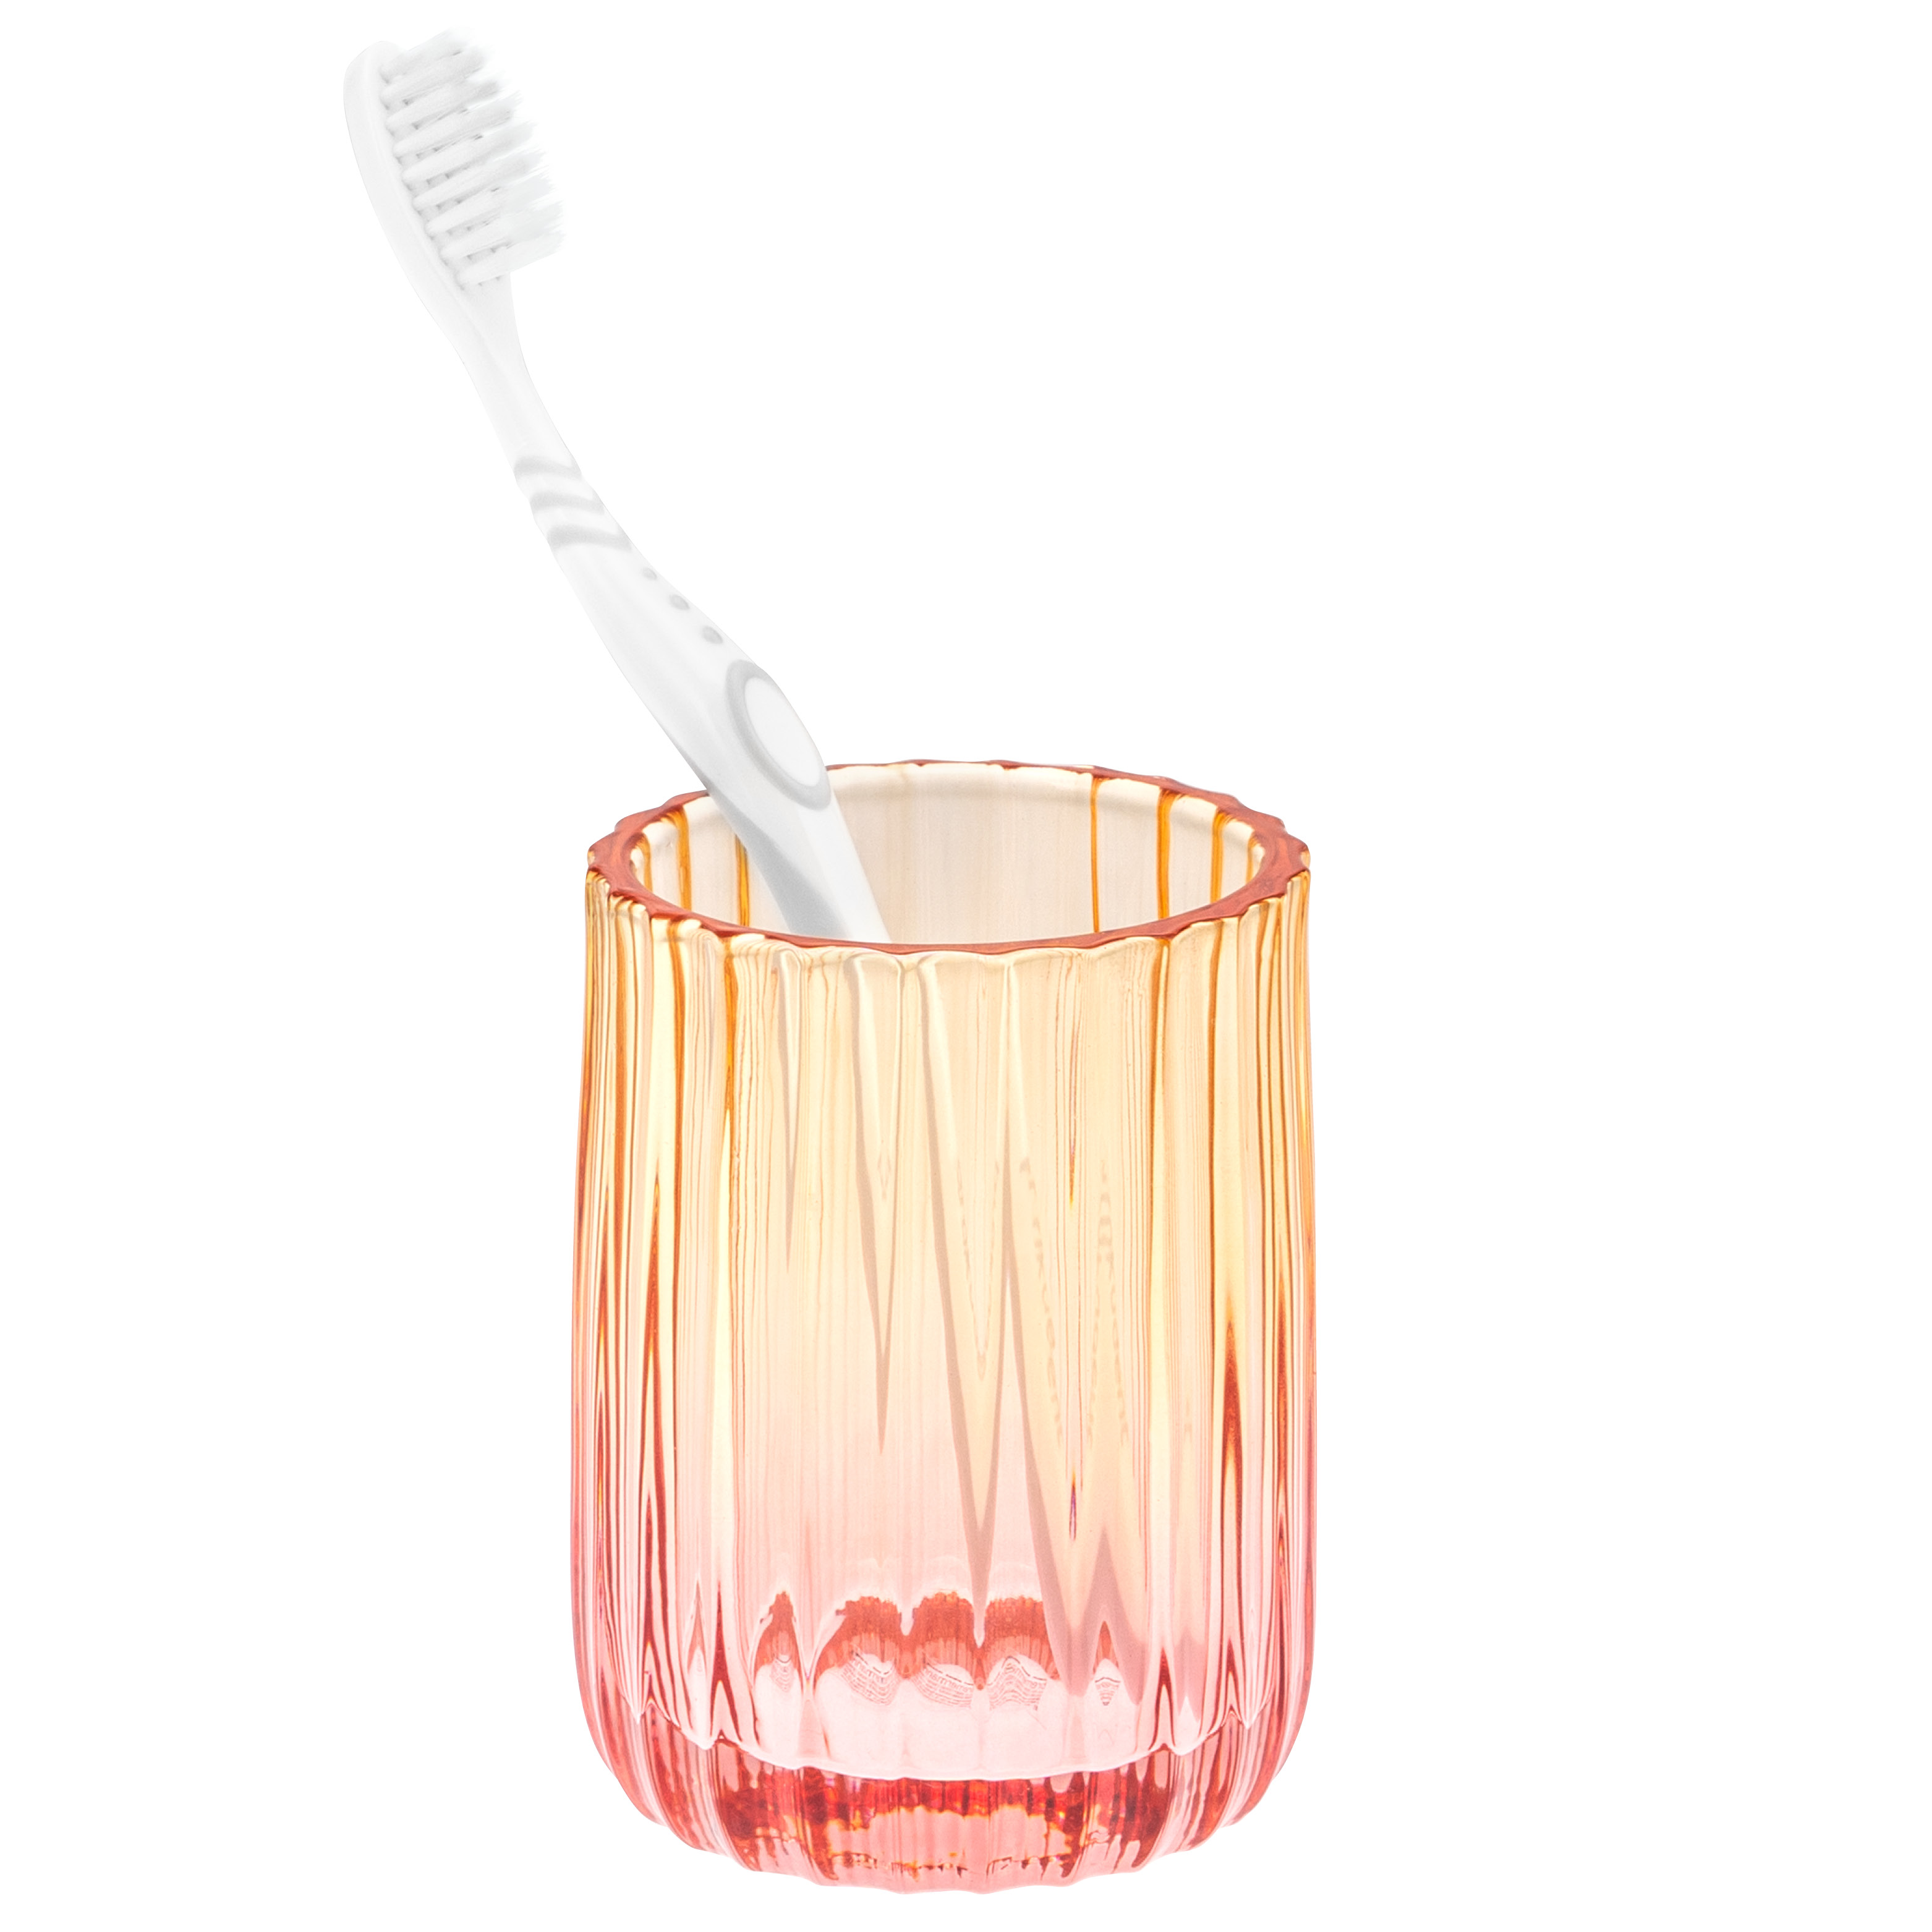 Zahnputzbecher aus Glas, Zahnbürstenhalter, Zahnputzglas, rot/orange